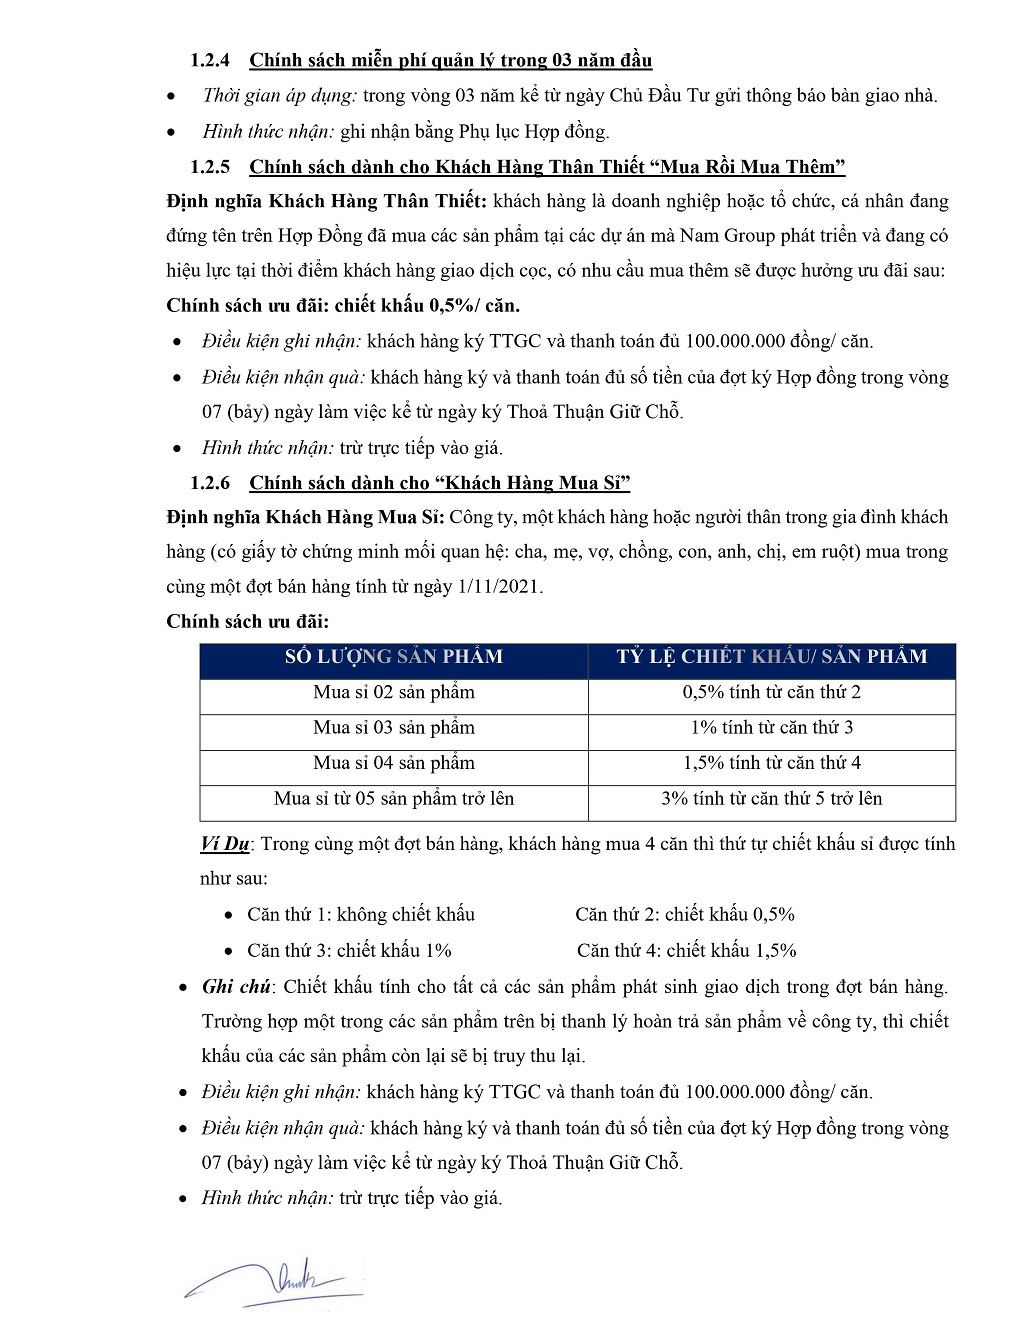 Chính sách bán hàng Thanh Long Bay